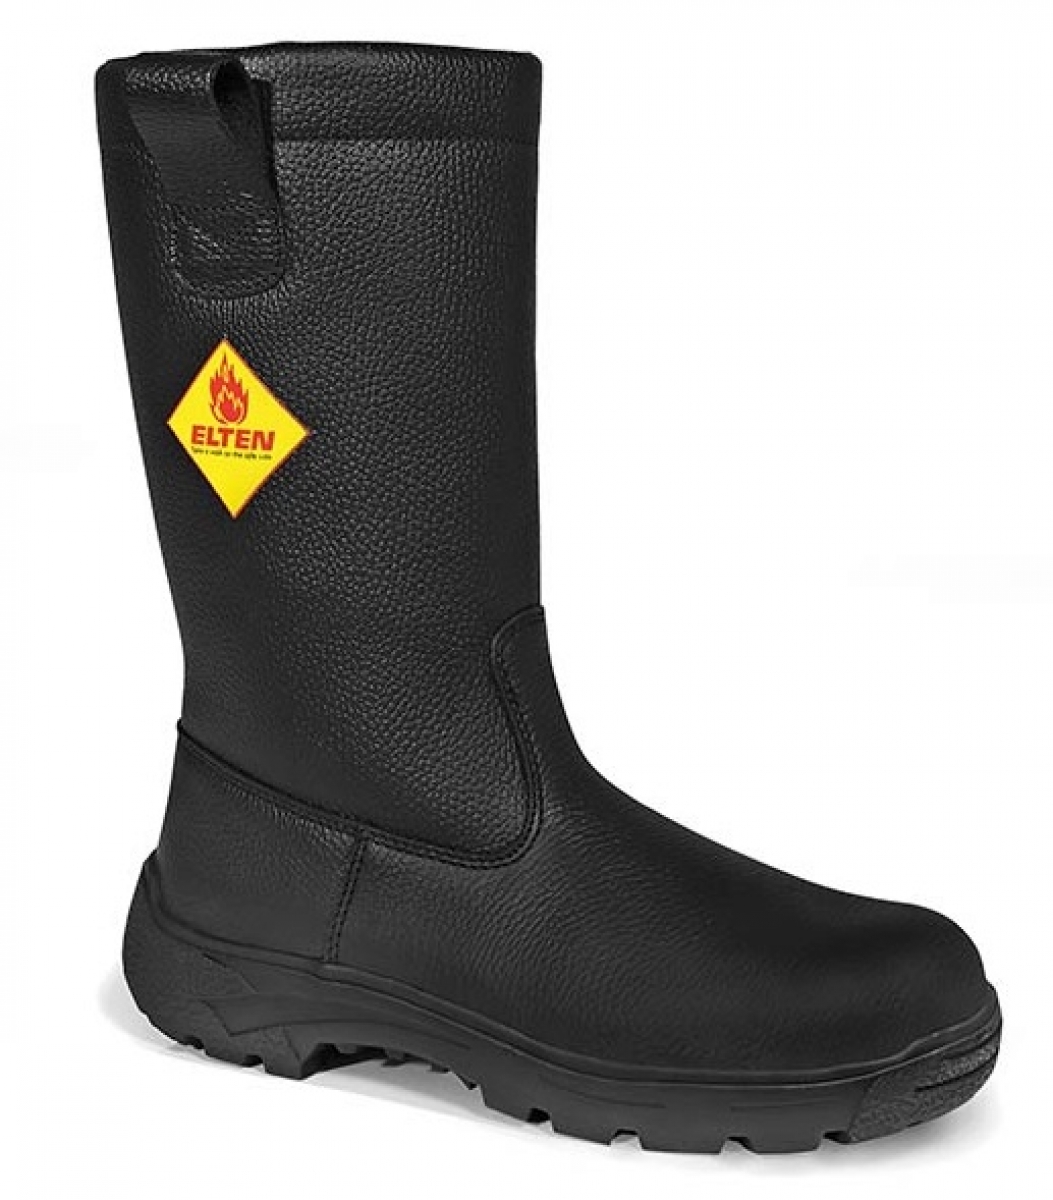 ELTEN-Footwear, F2A-Feuerwehrschlupfstiefel, MASTER, Form D, HI, schwarz